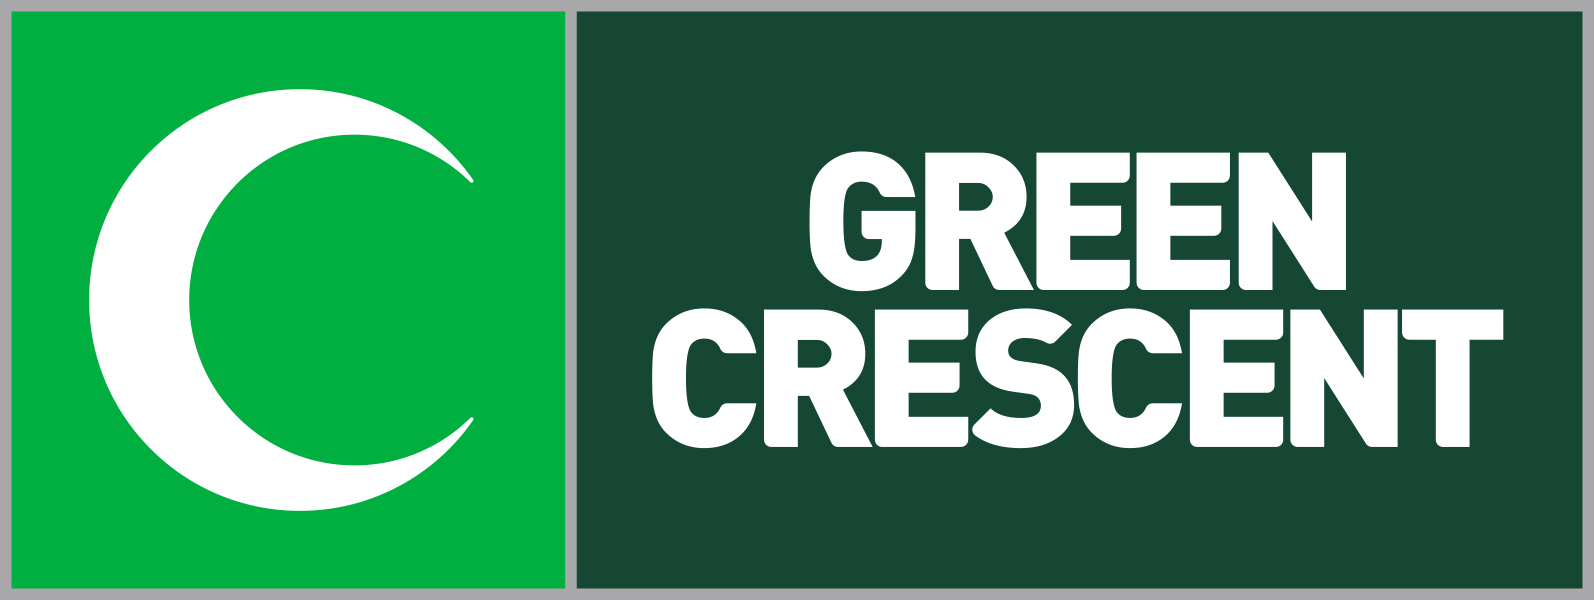 yesilay-ingilizce-logo-yatay-green-crescent-yesil